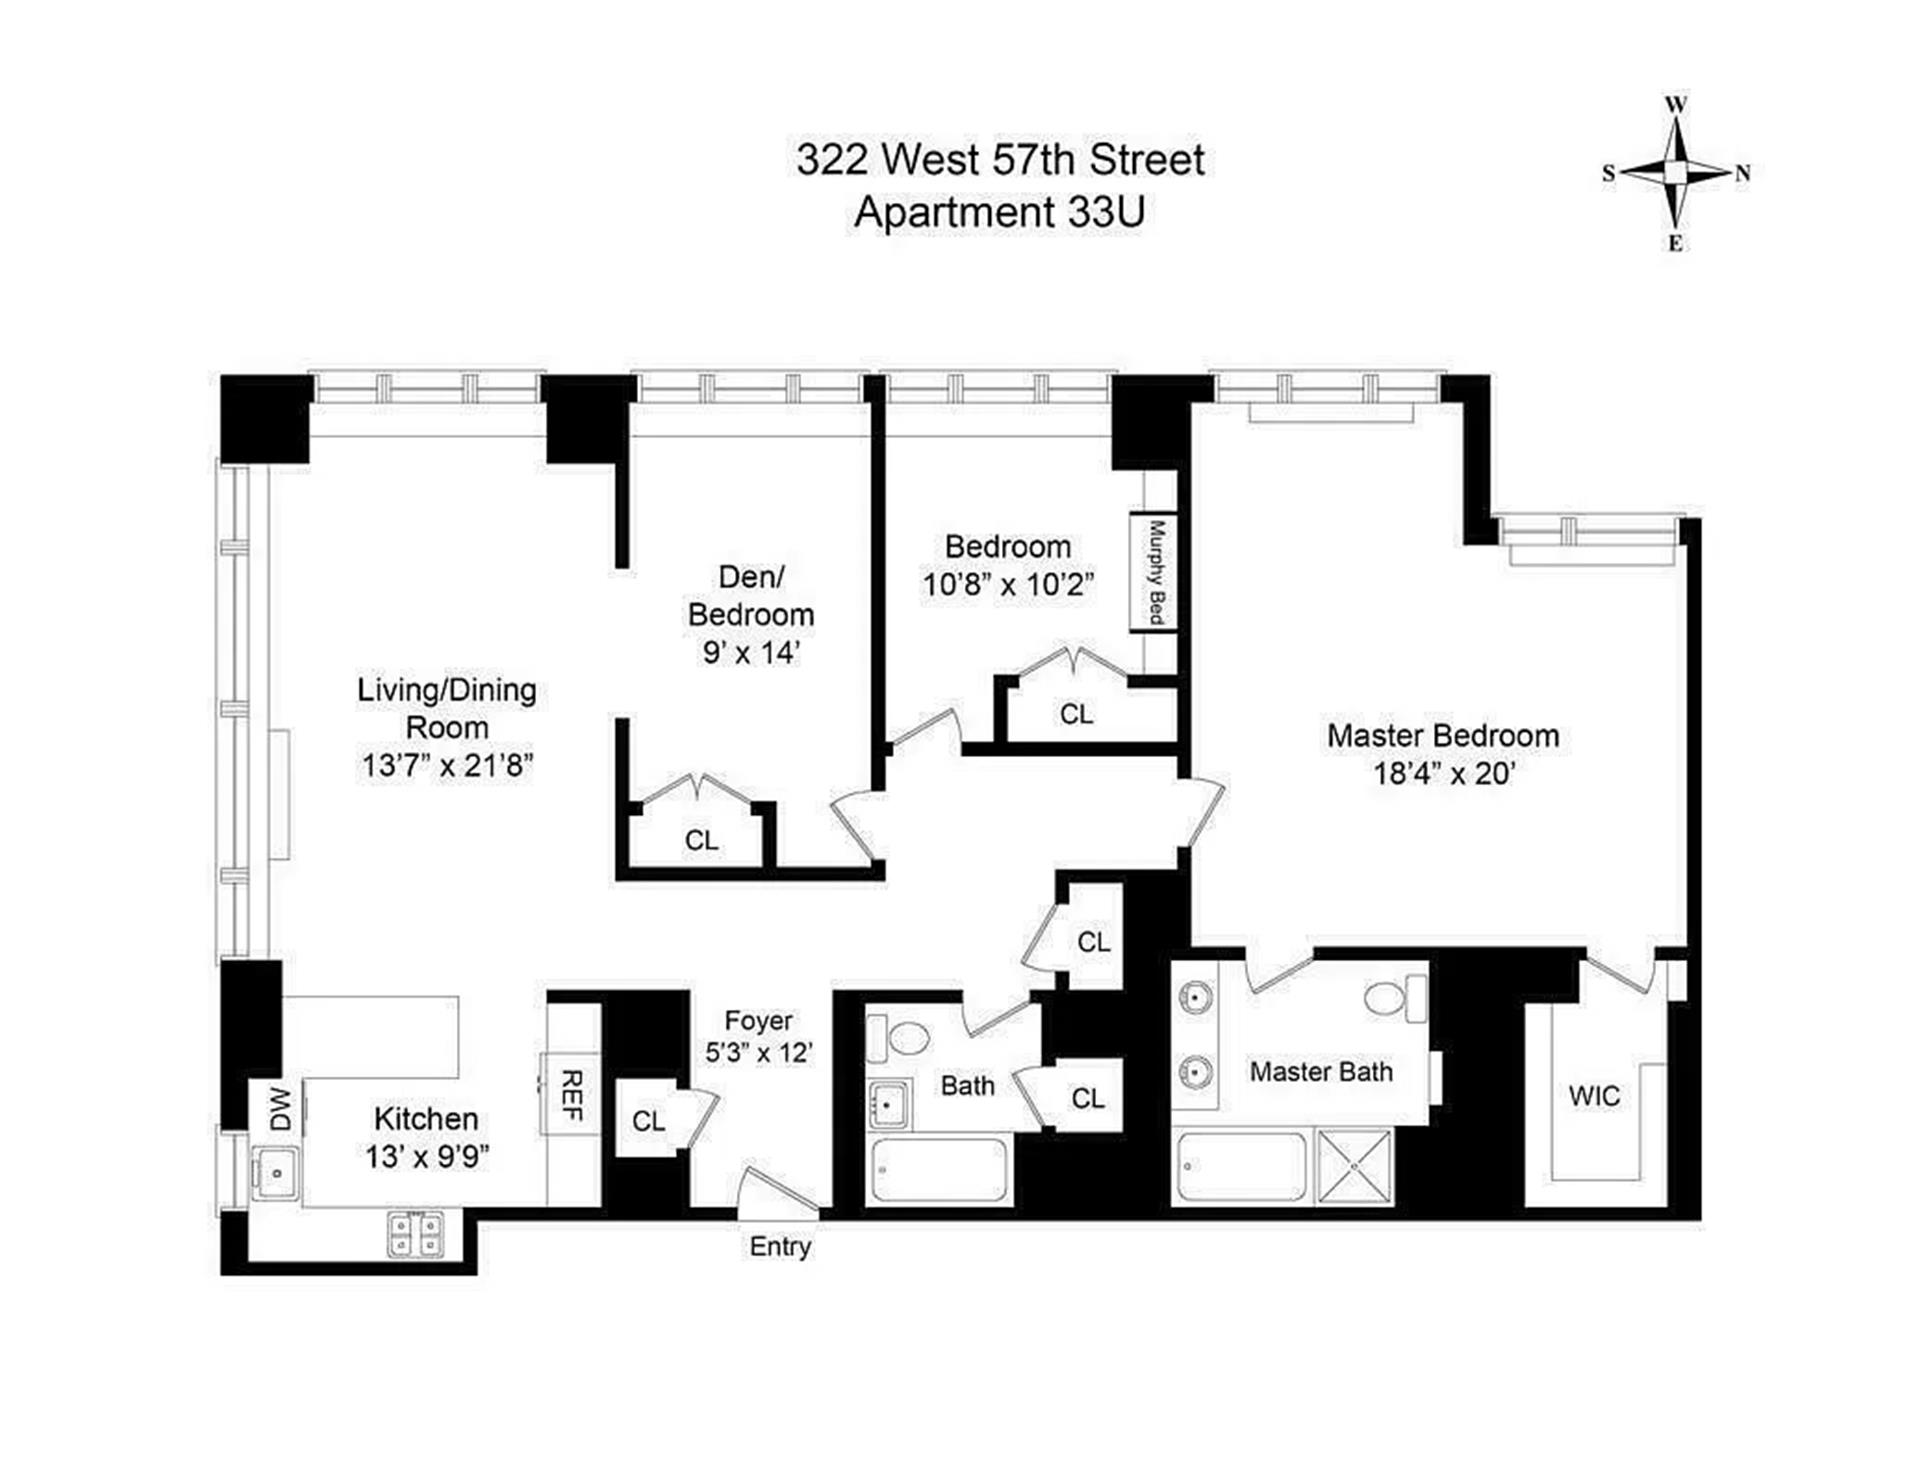 Floorplan for 322 West 57th Street, 33U